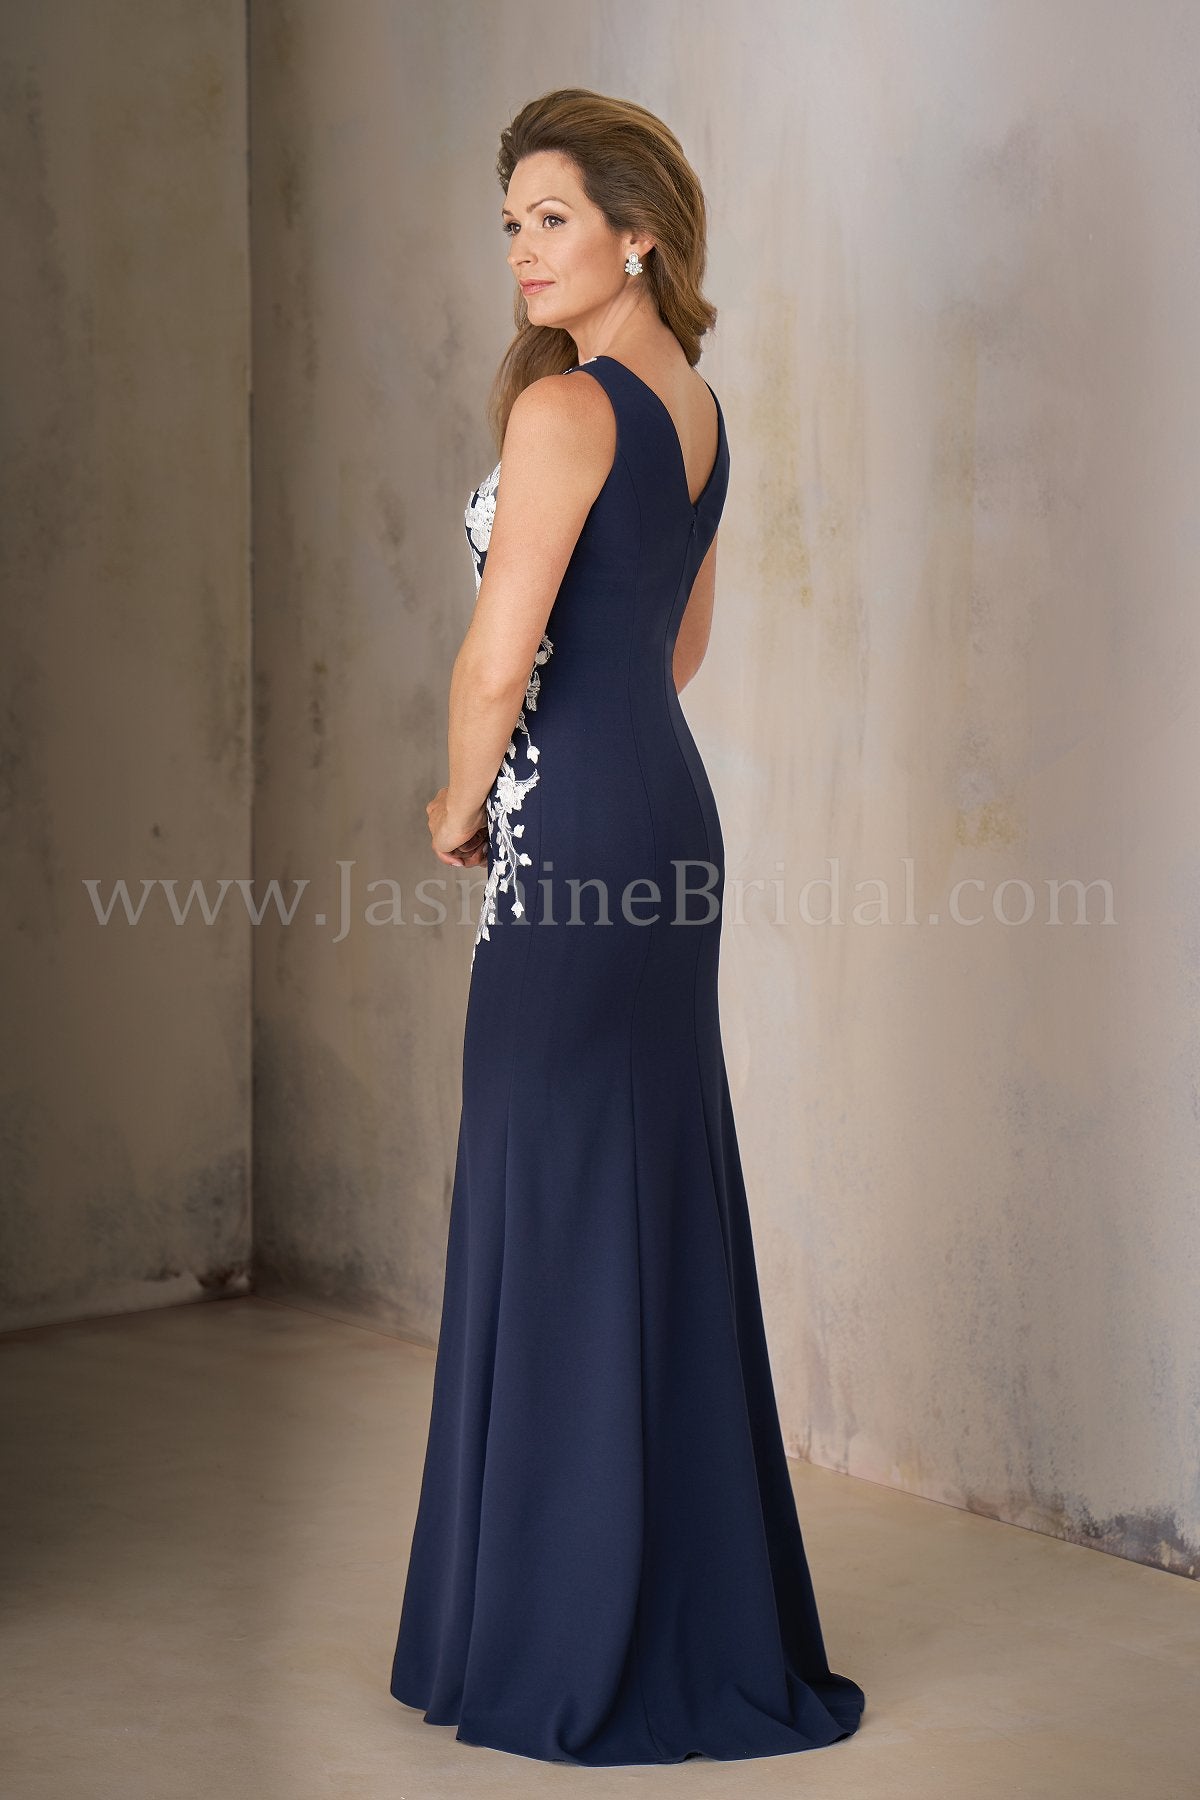 Jasmine K208002 Long Jewel Neckline Stretch Crepe w/ Lace MOB Dress with Shawl